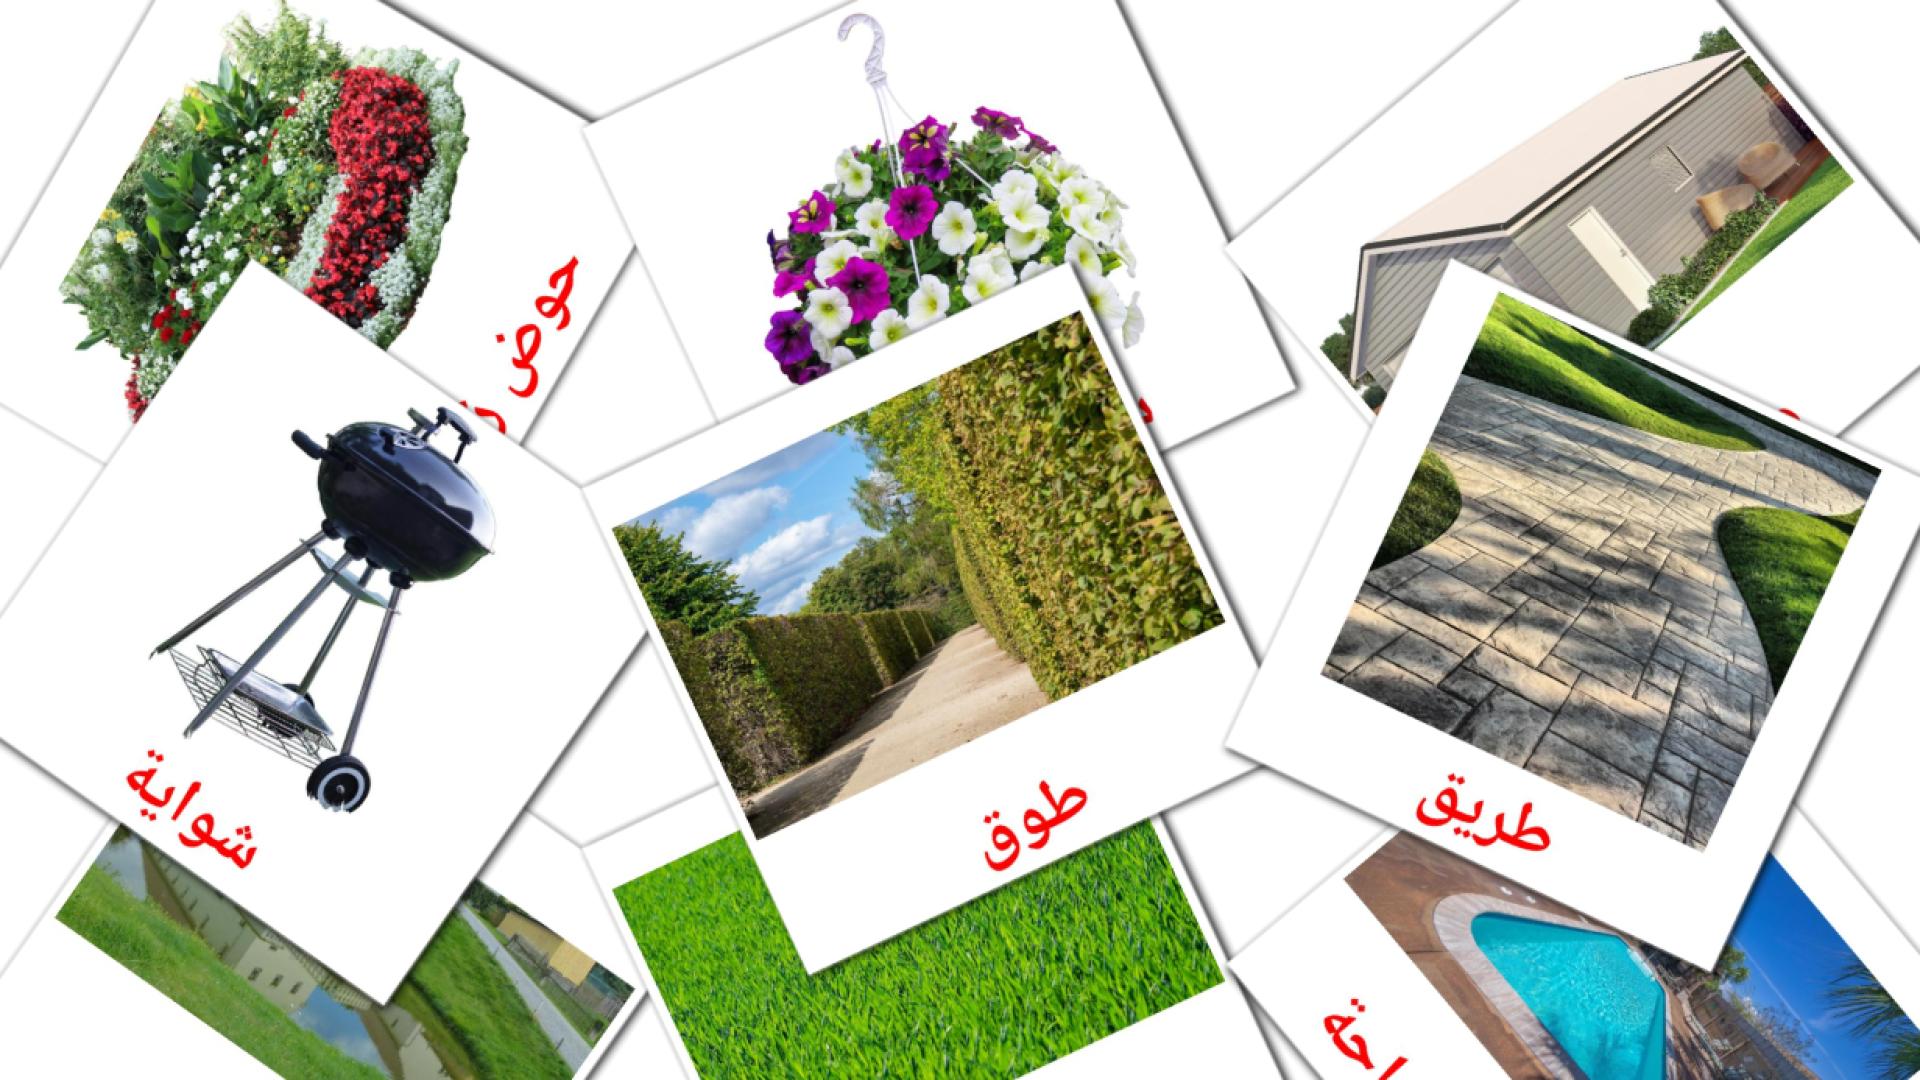 Jardinería - tarjetas de vocabulario en árabe